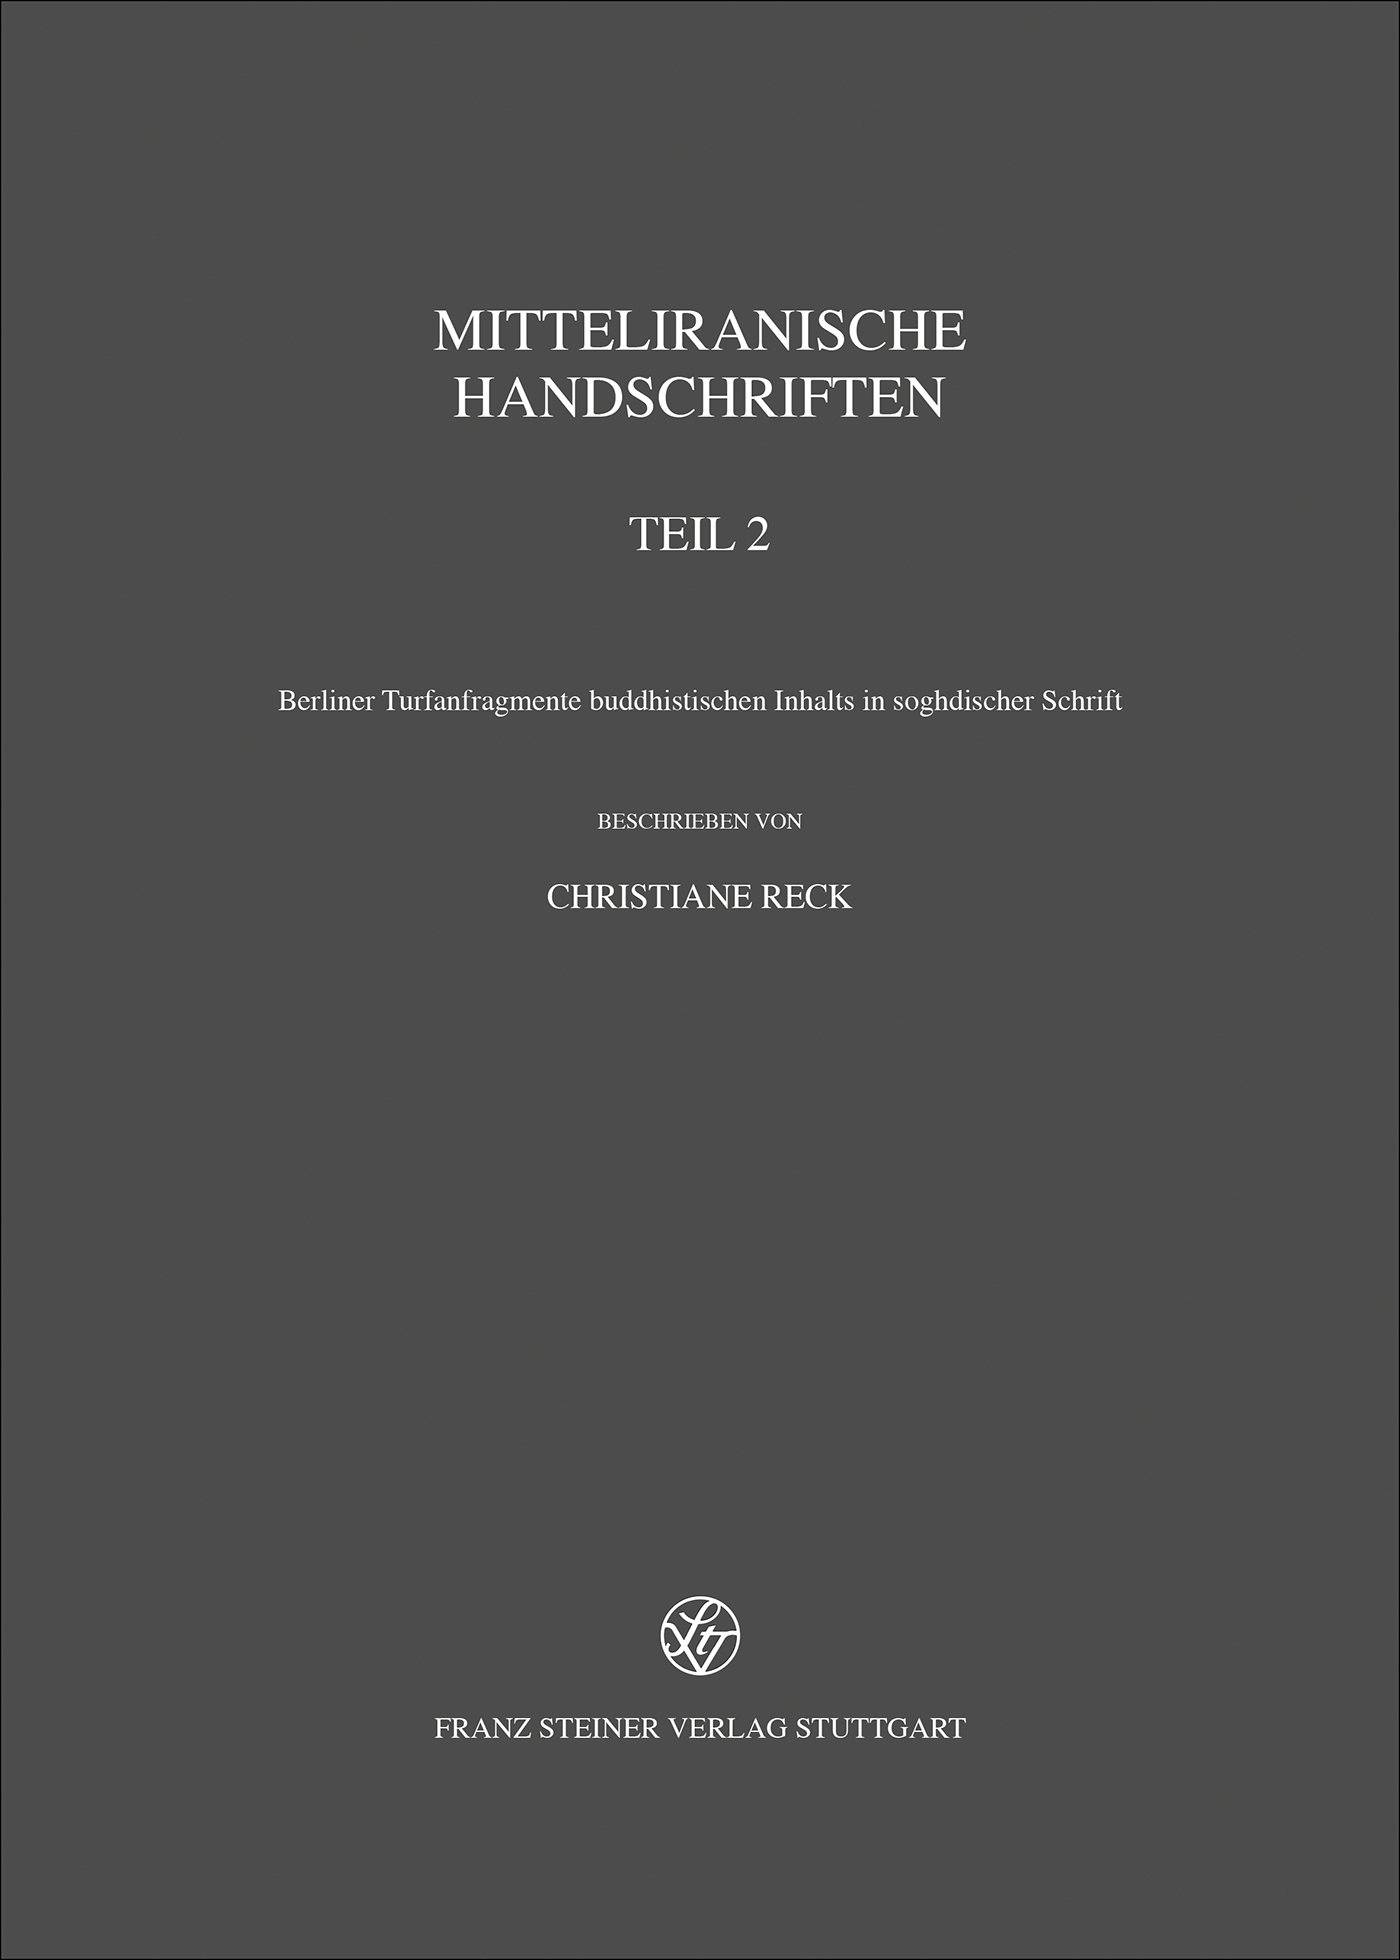 Mitteliranische Handschriften